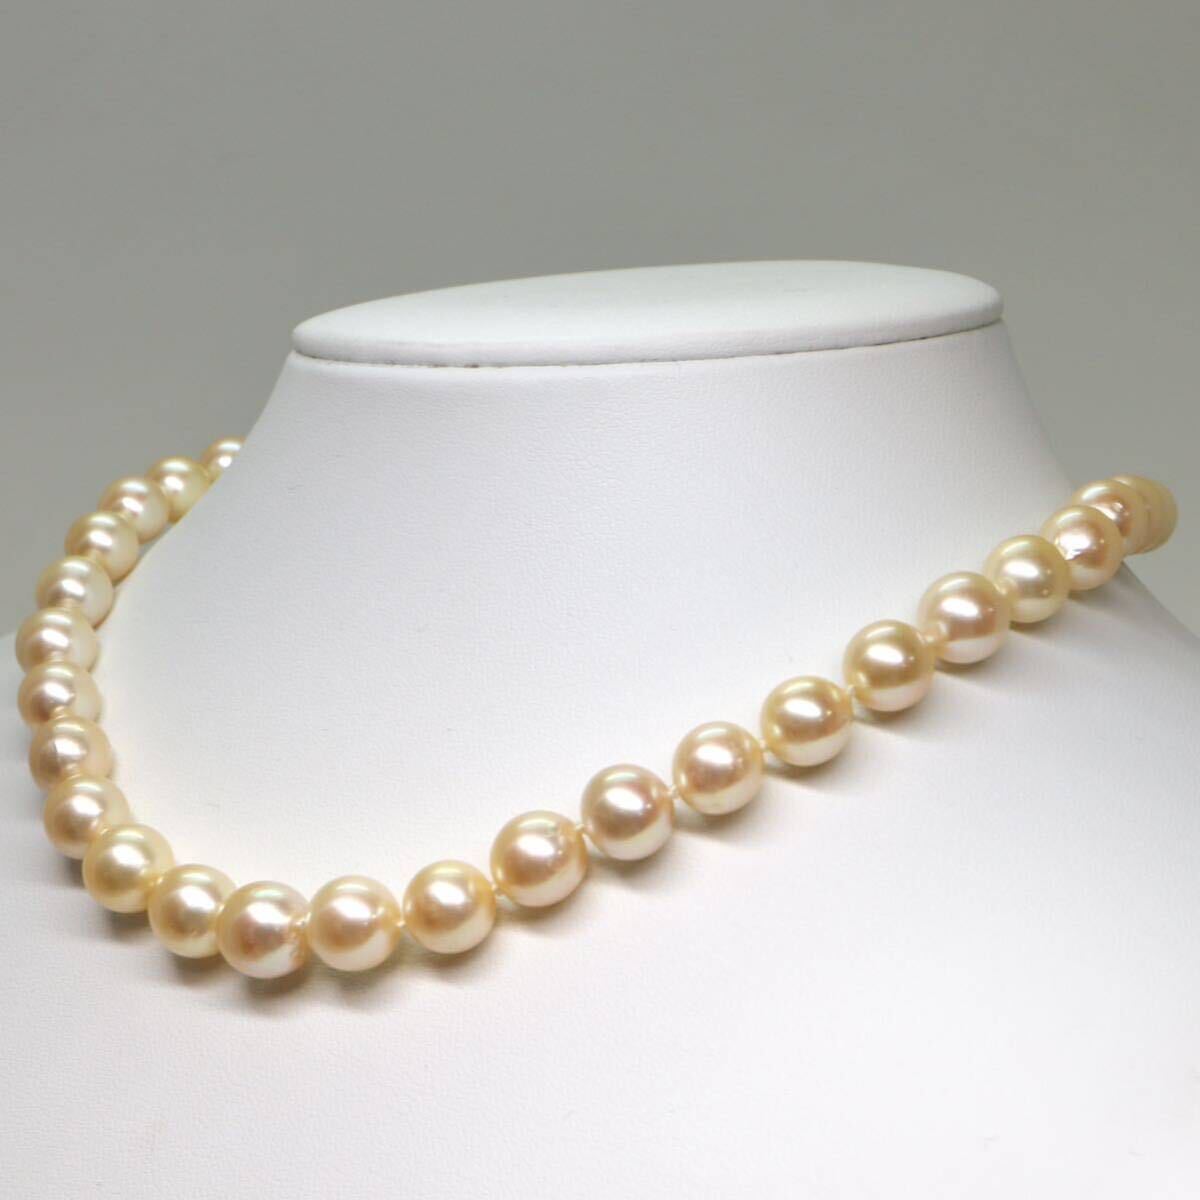 大珠!!《アコヤ本真珠ネックレス》A 約9.0-9.5mm珠 46.9g 約40cm pearl necklace ジュエリー jewelry DC0/EB0_画像3